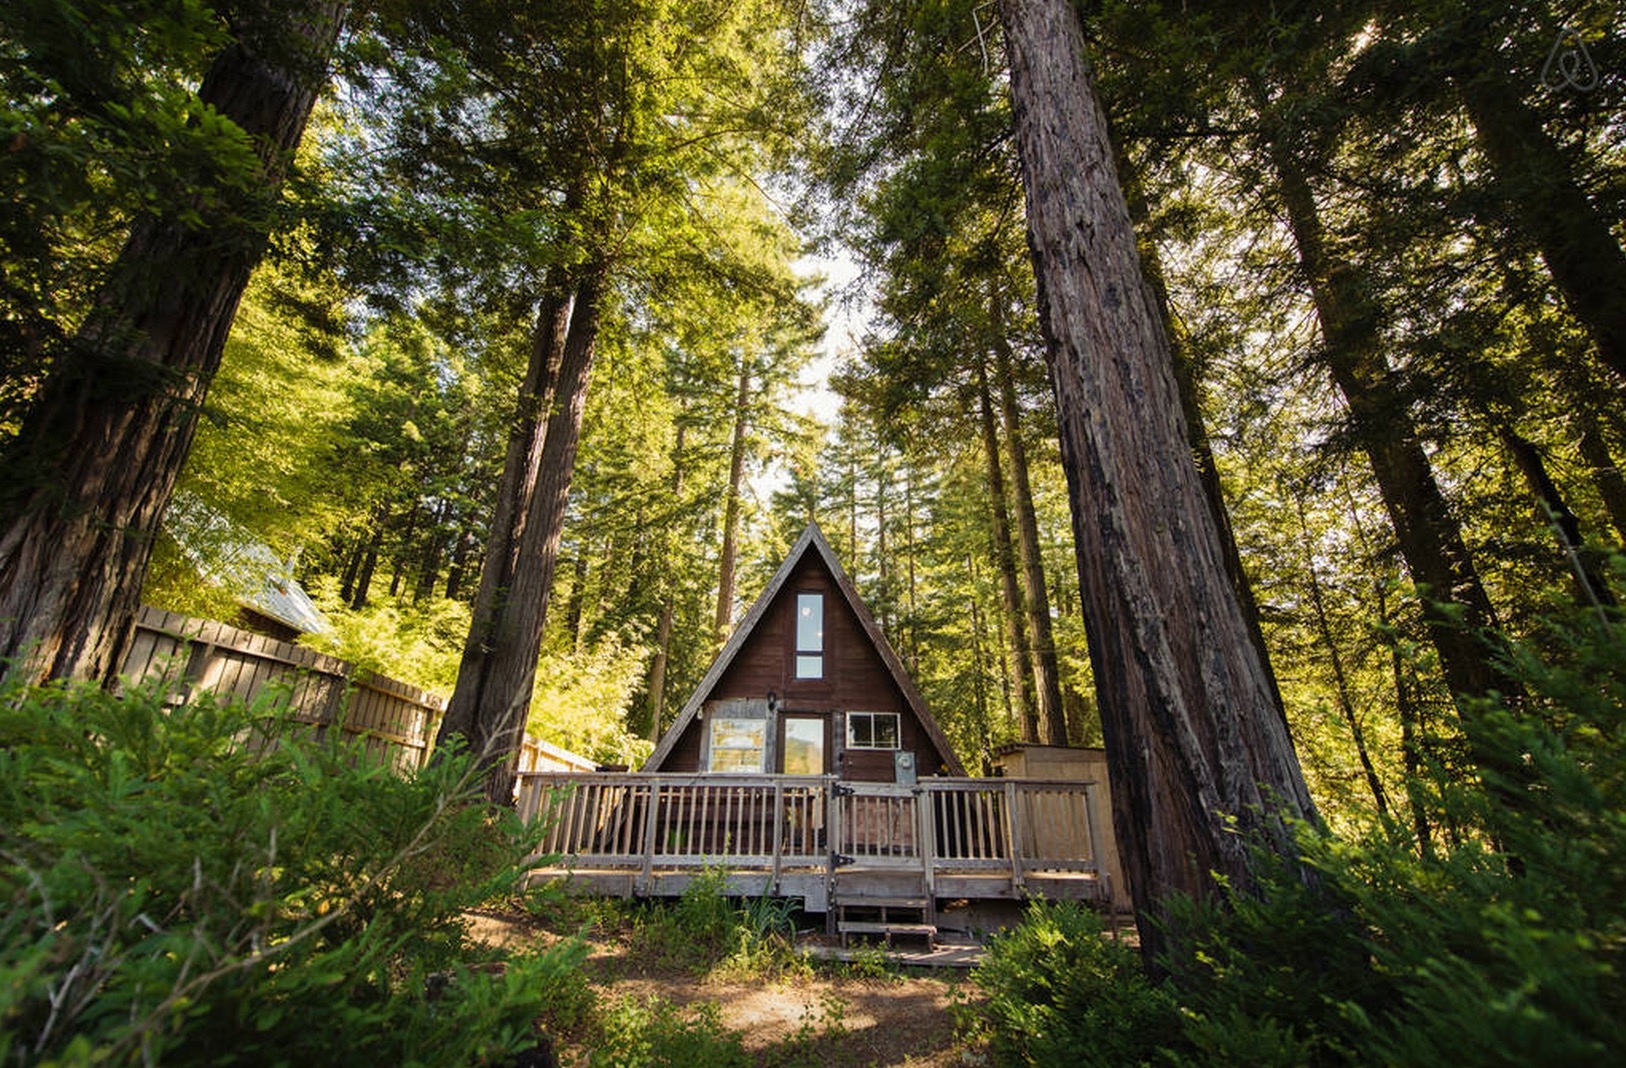 Cabin-Redwoods-Joli-Joli-Design-Cabine-14